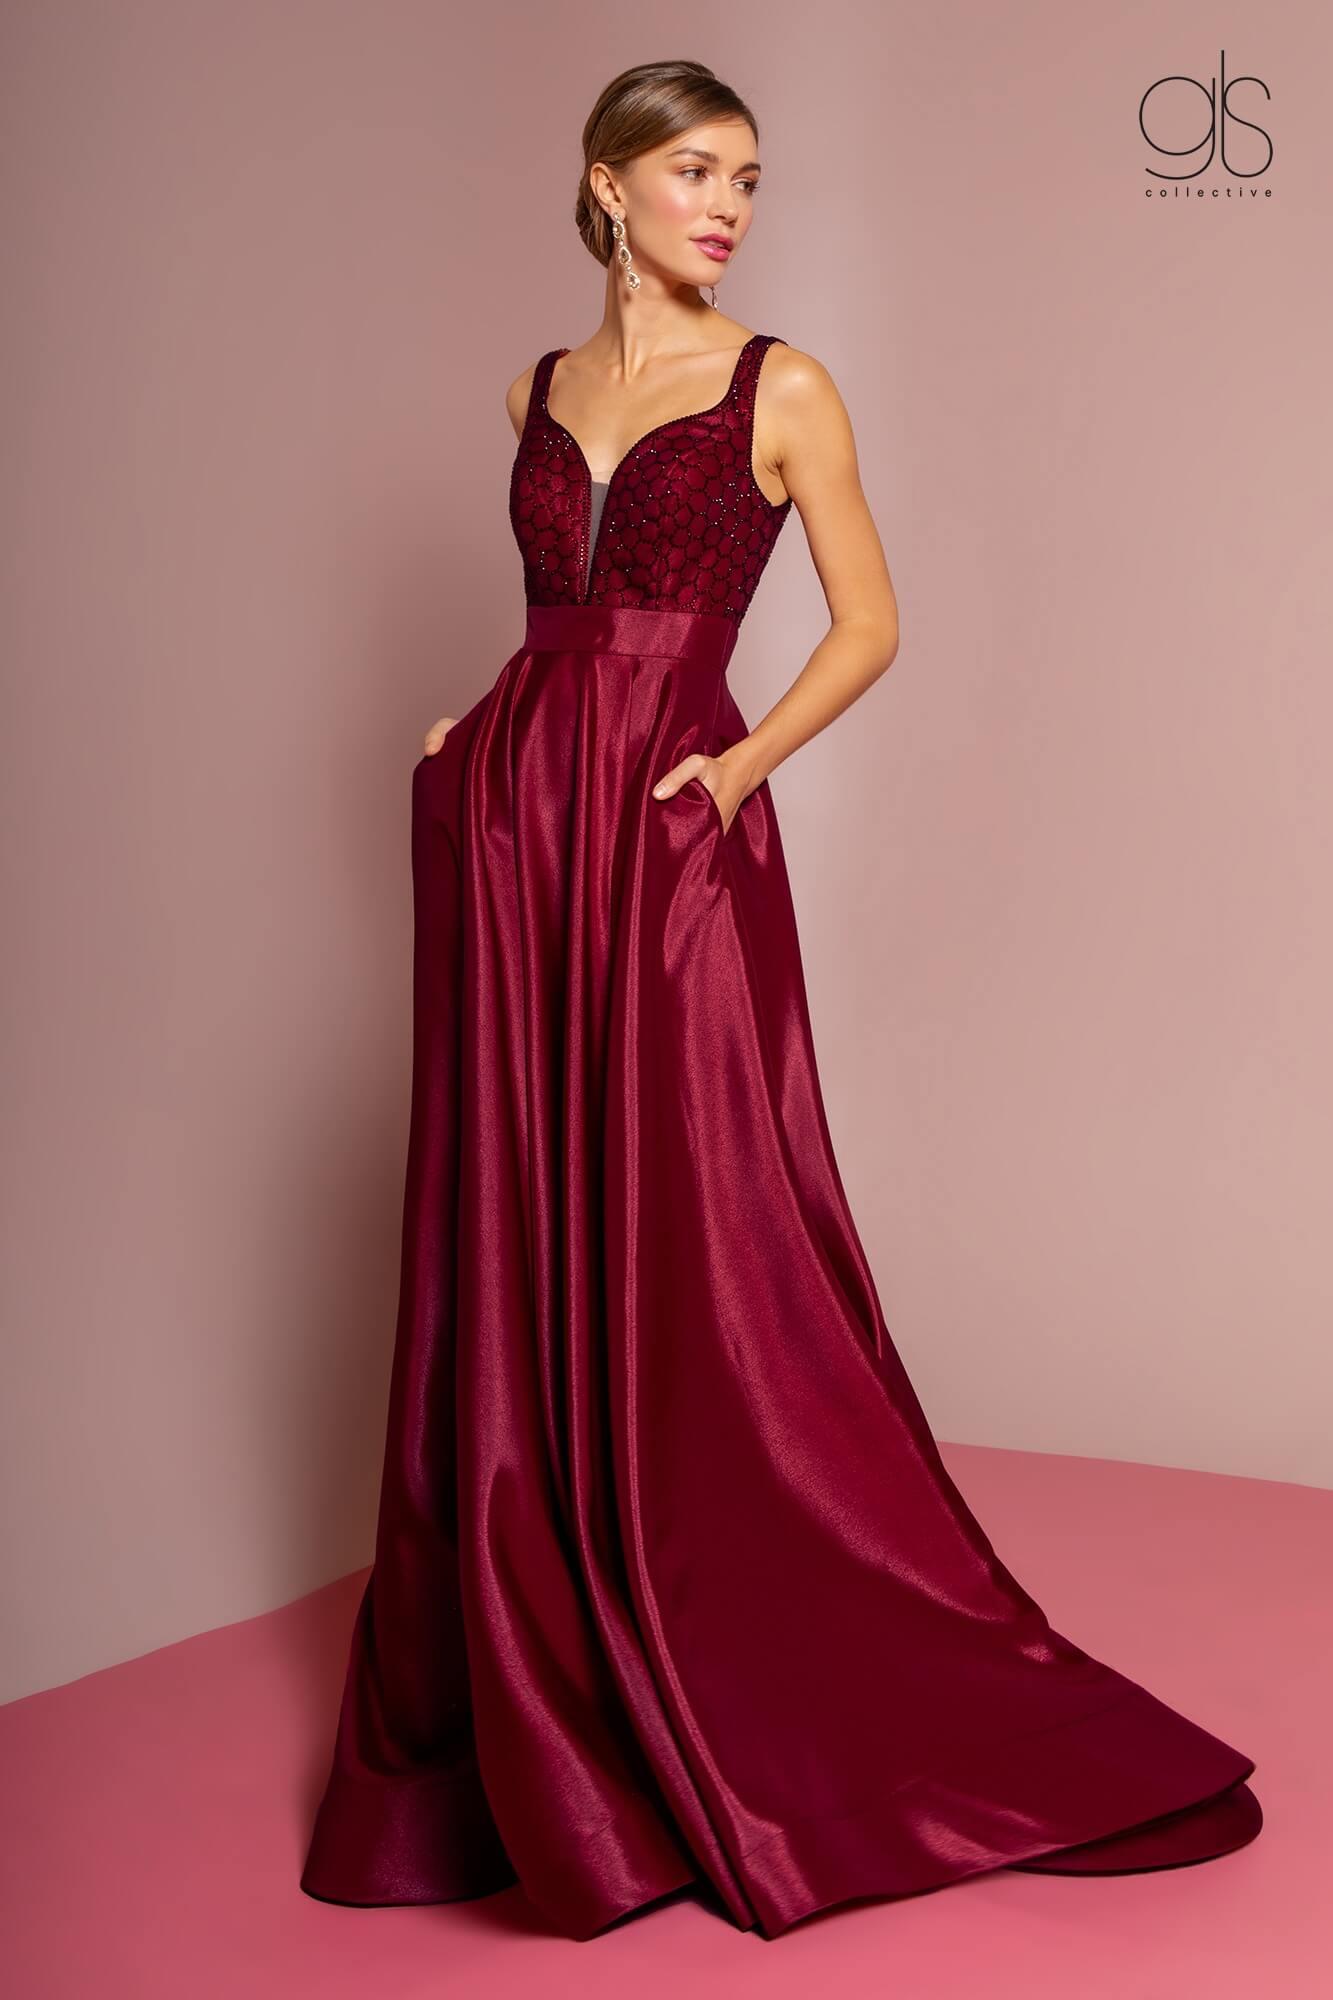 Prom Long Formal Evening Dress with Pockets - The Dress Outlet Elizabeth K